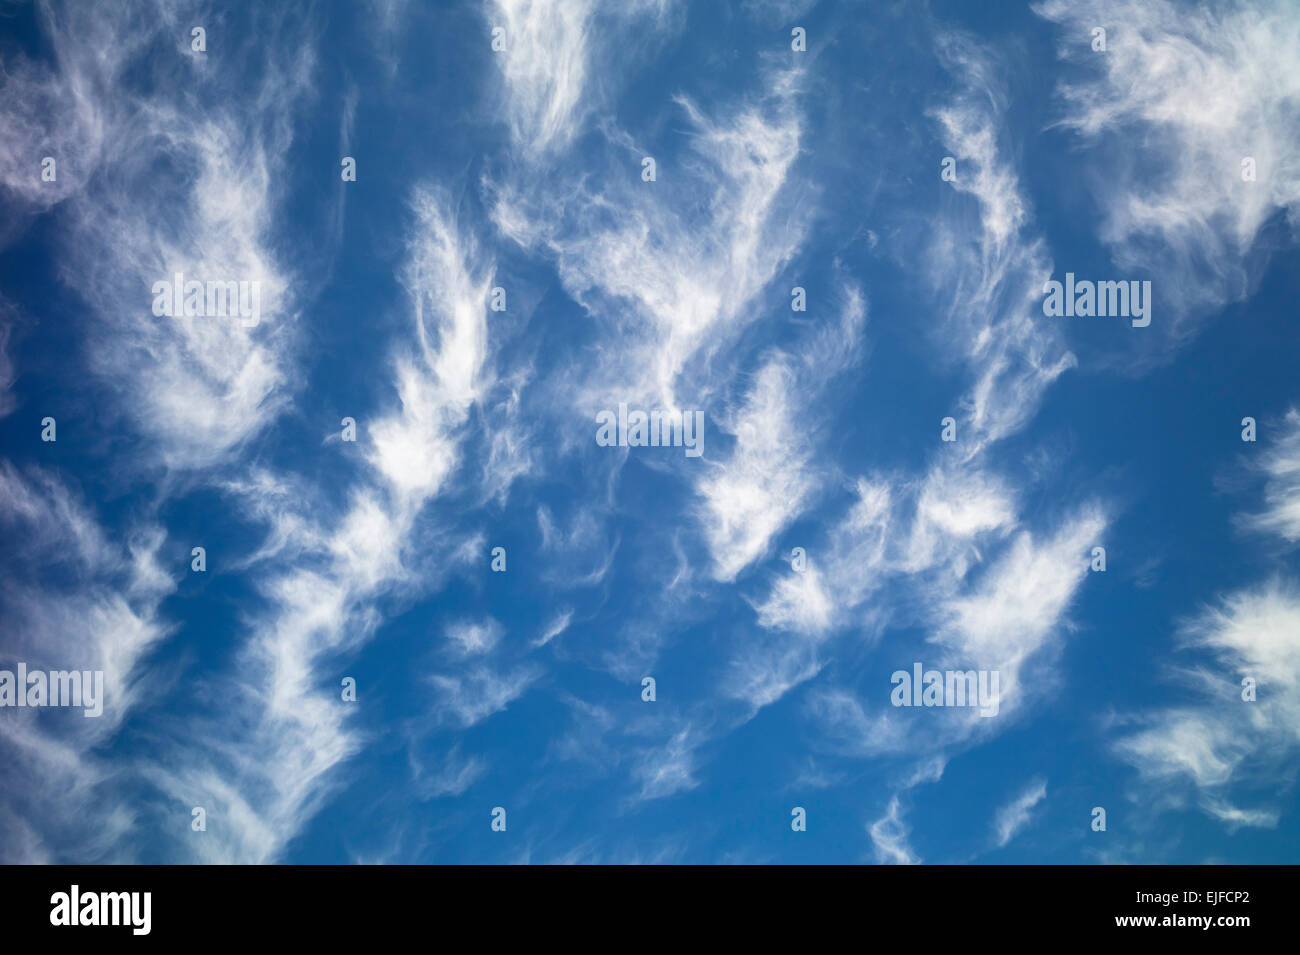 Cirruswolken am blauen Himmel Stockfoto